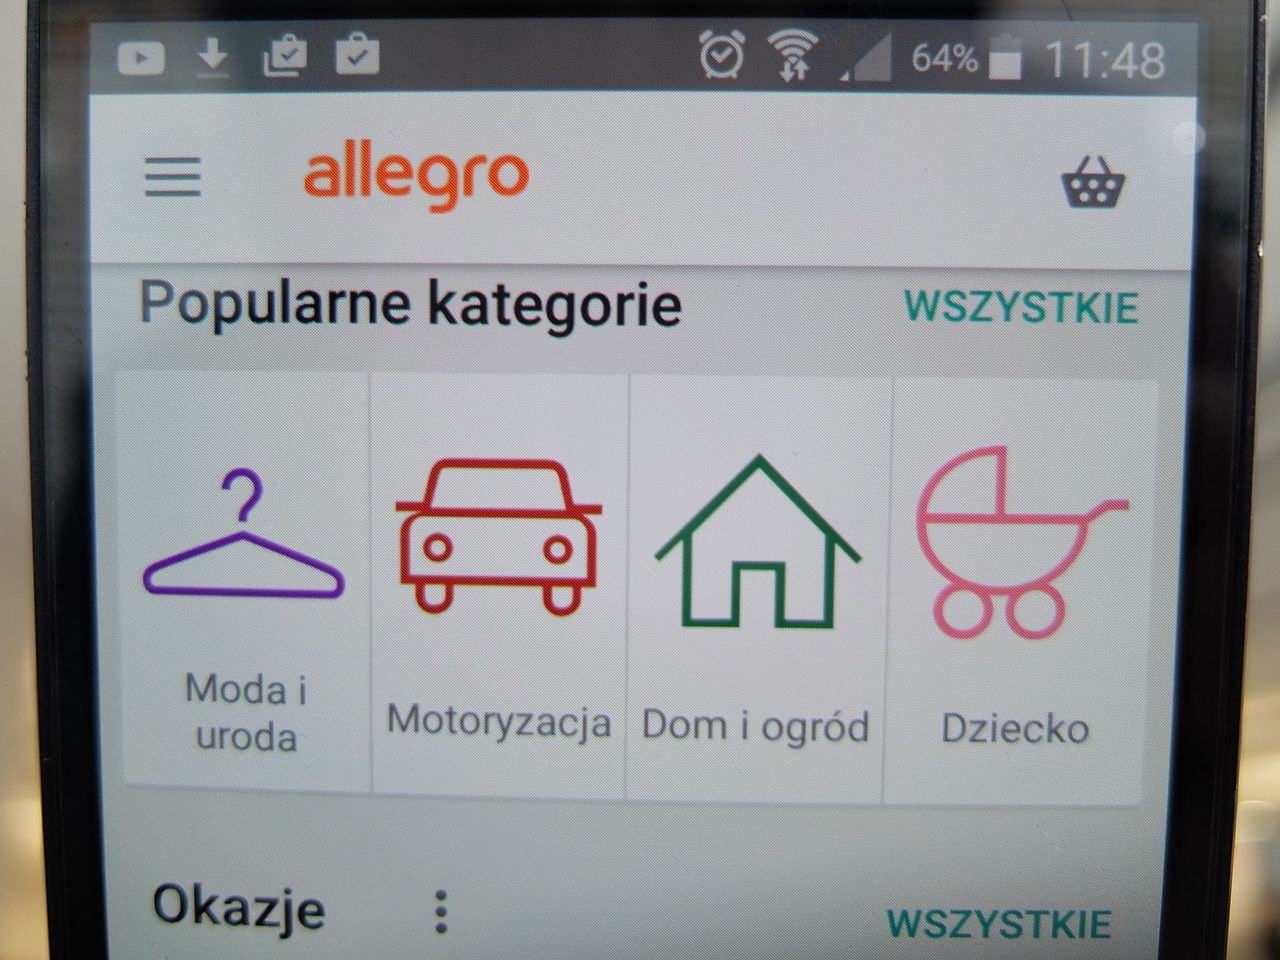 Nowy atak na użytkowników Allegro. "Przyznaliśmy ci zwrot 1000 zł"